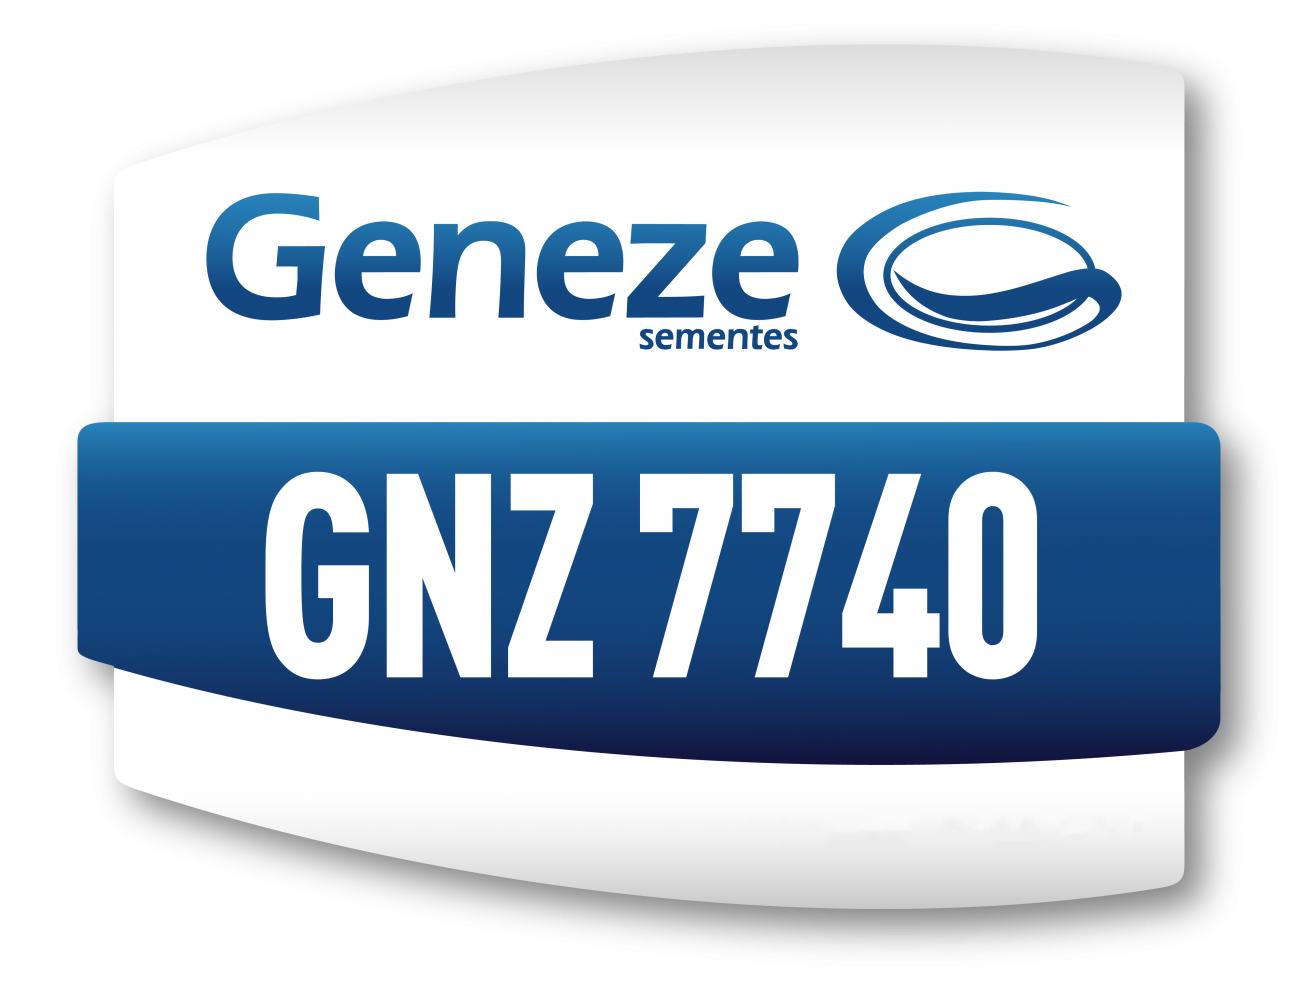 GNZ 7740